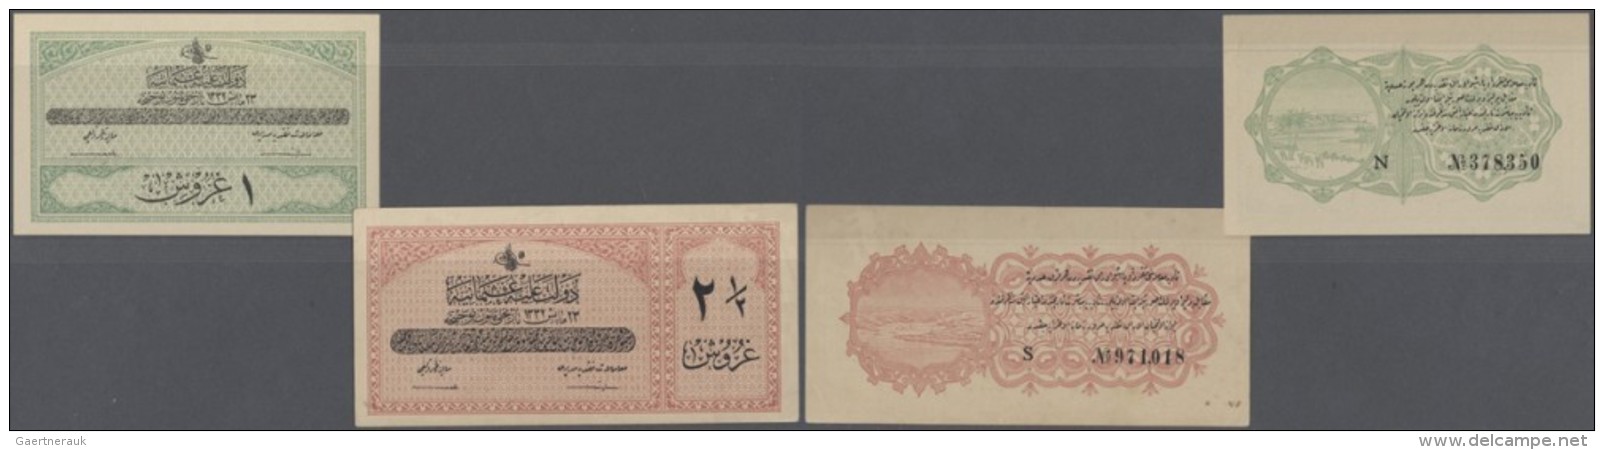 Turkey / T&uuml;rkei: Set Of 2 Notes Containing 1 Piastre 1916 P. 85 (UNC) And 2 1/2 Piastres 1916 P. 86 (aUNC), Nice Se - Türkei